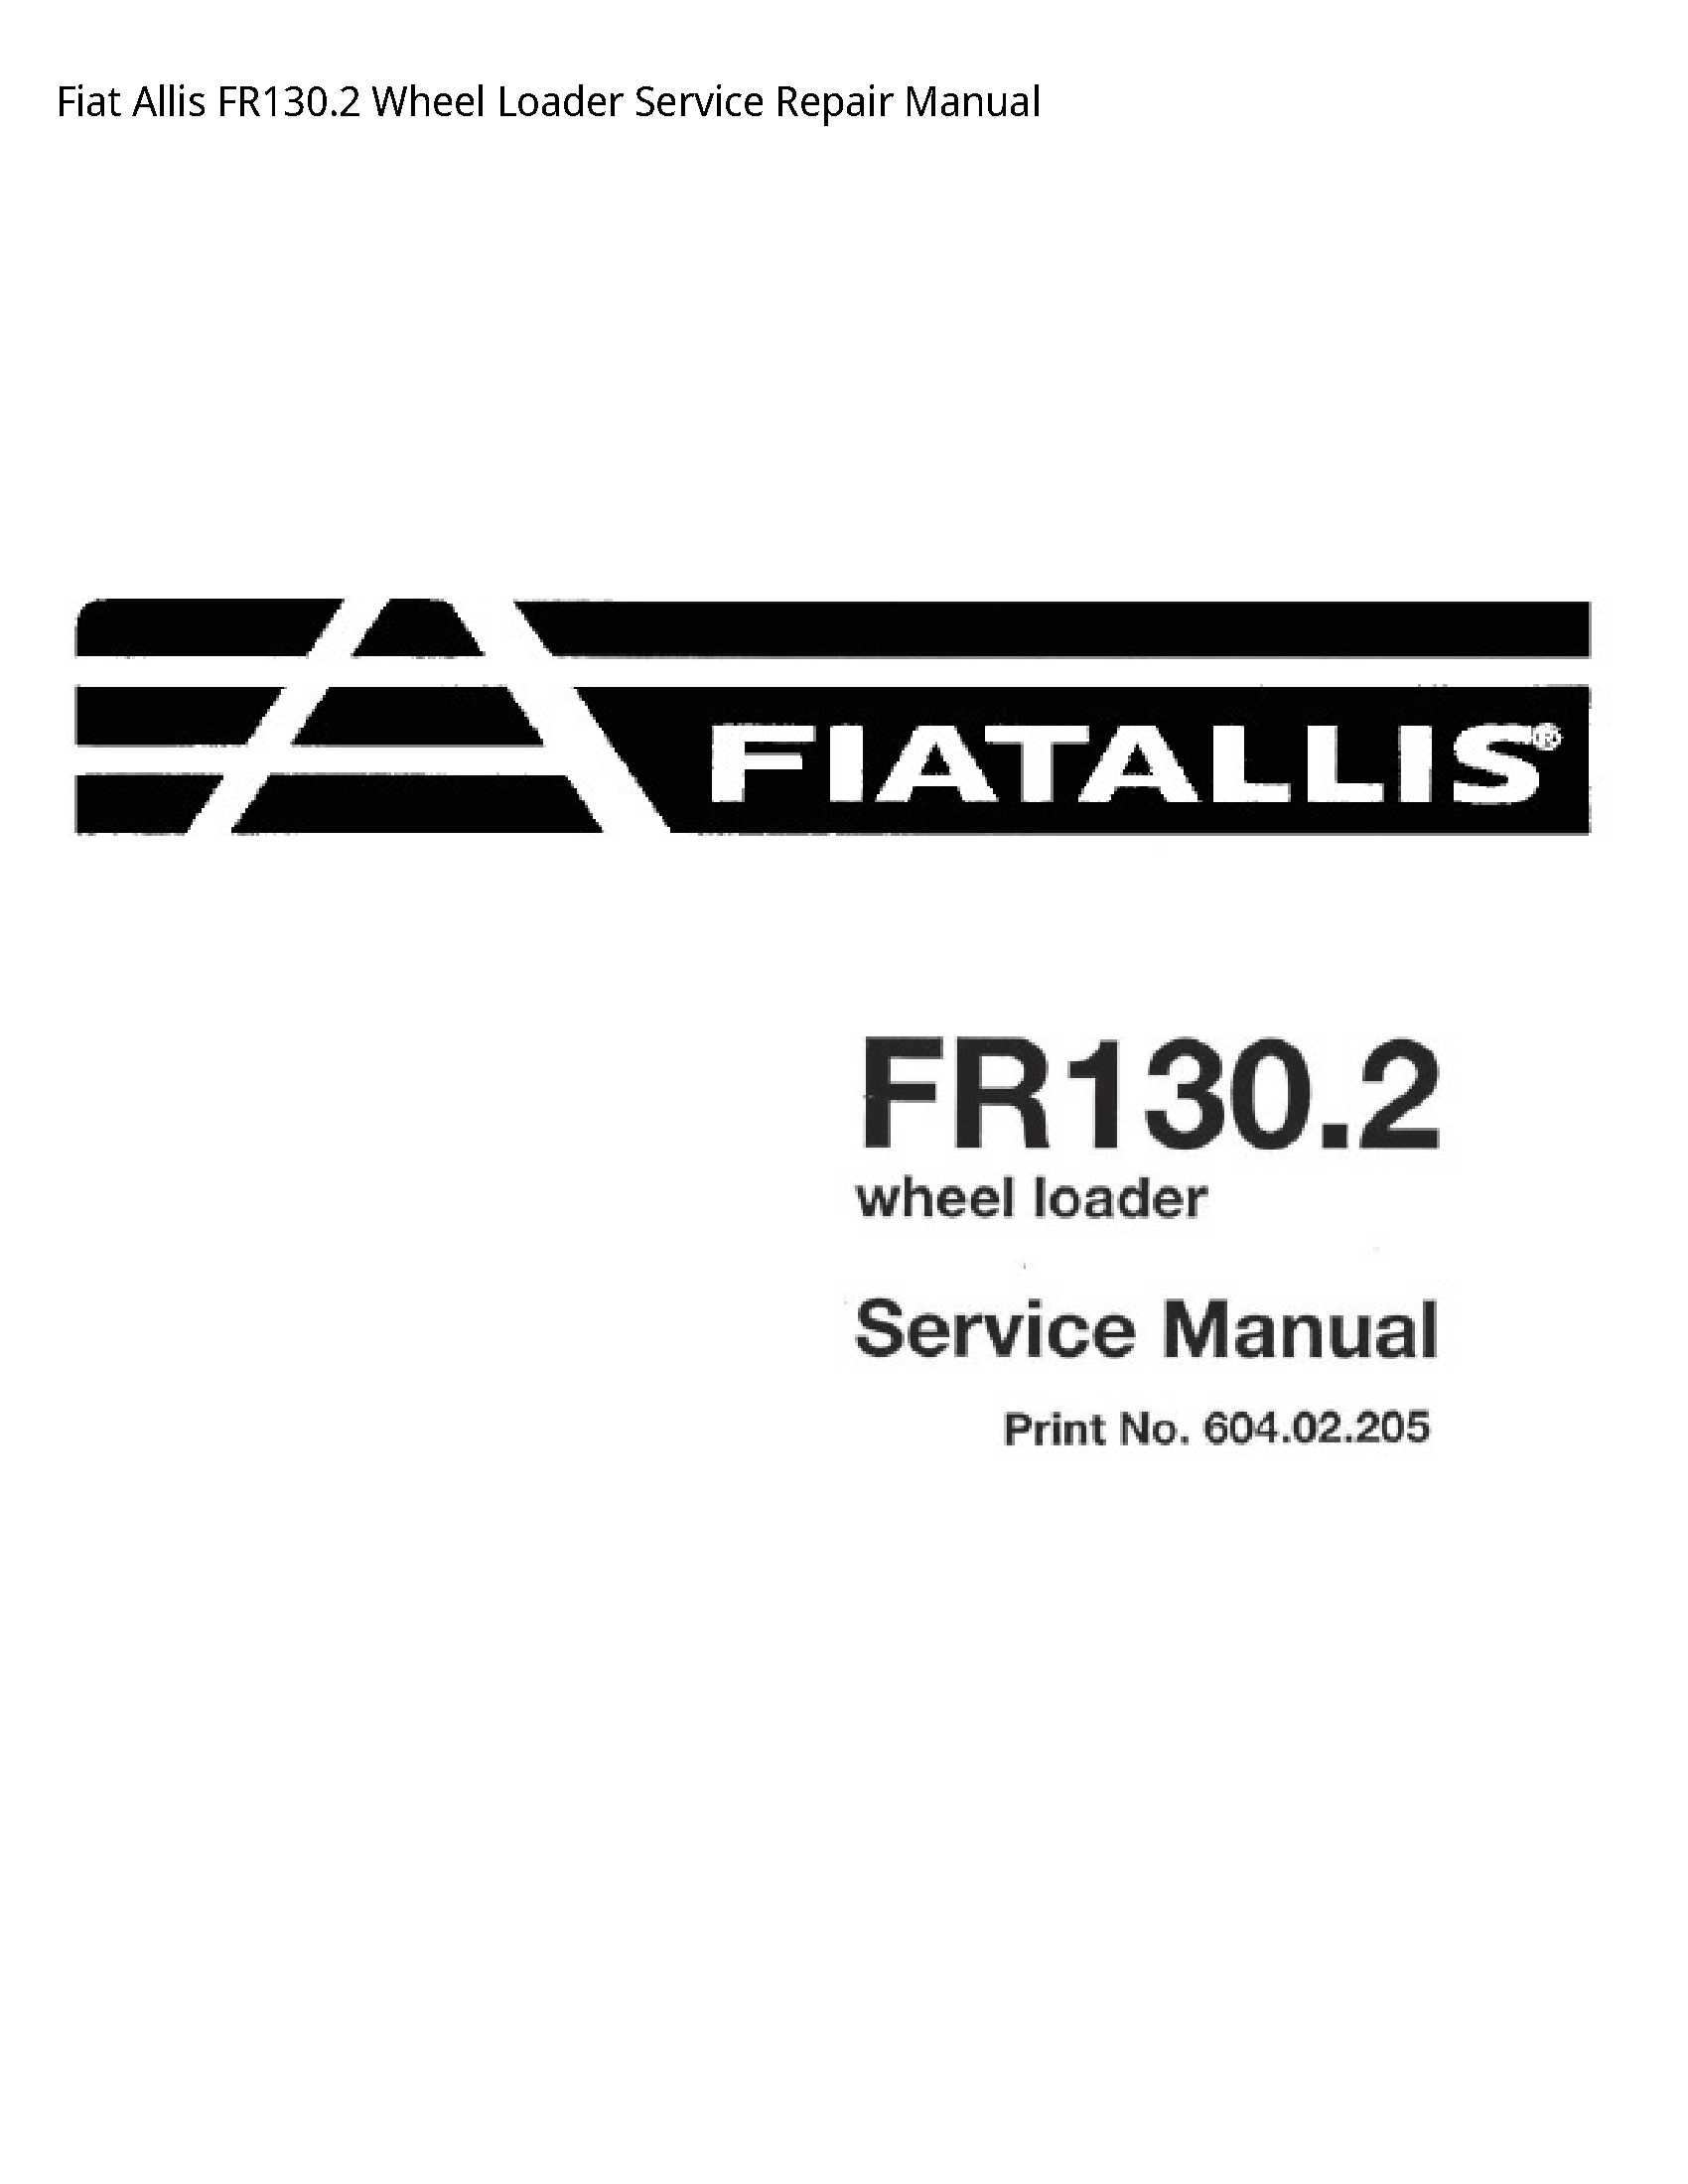 Fiat Allis FR130.2 Wheel Loader manual